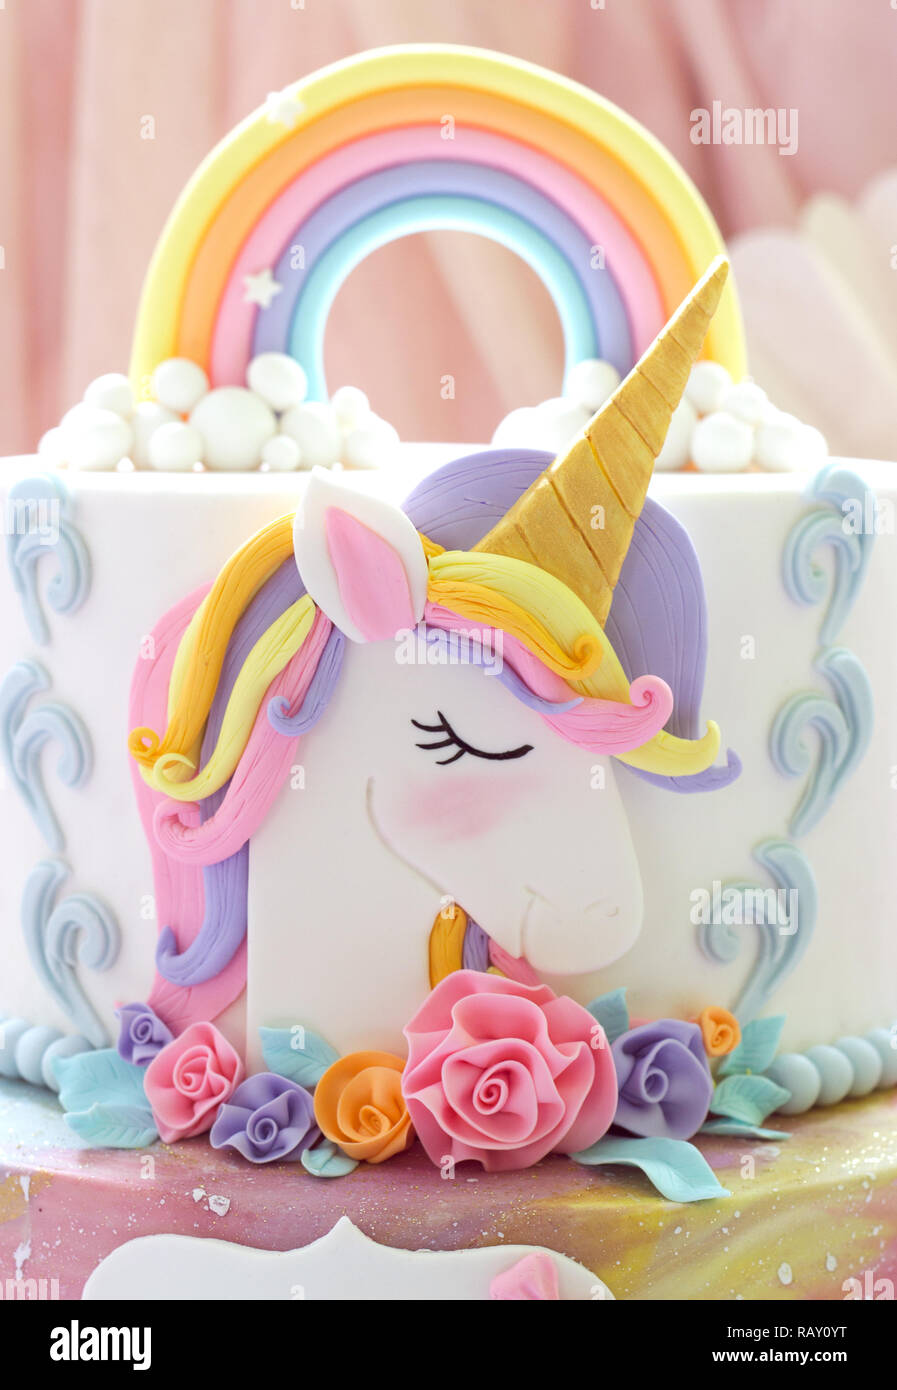 Détails d'un cake topper Unicorn unicorn - close up Banque D'Images